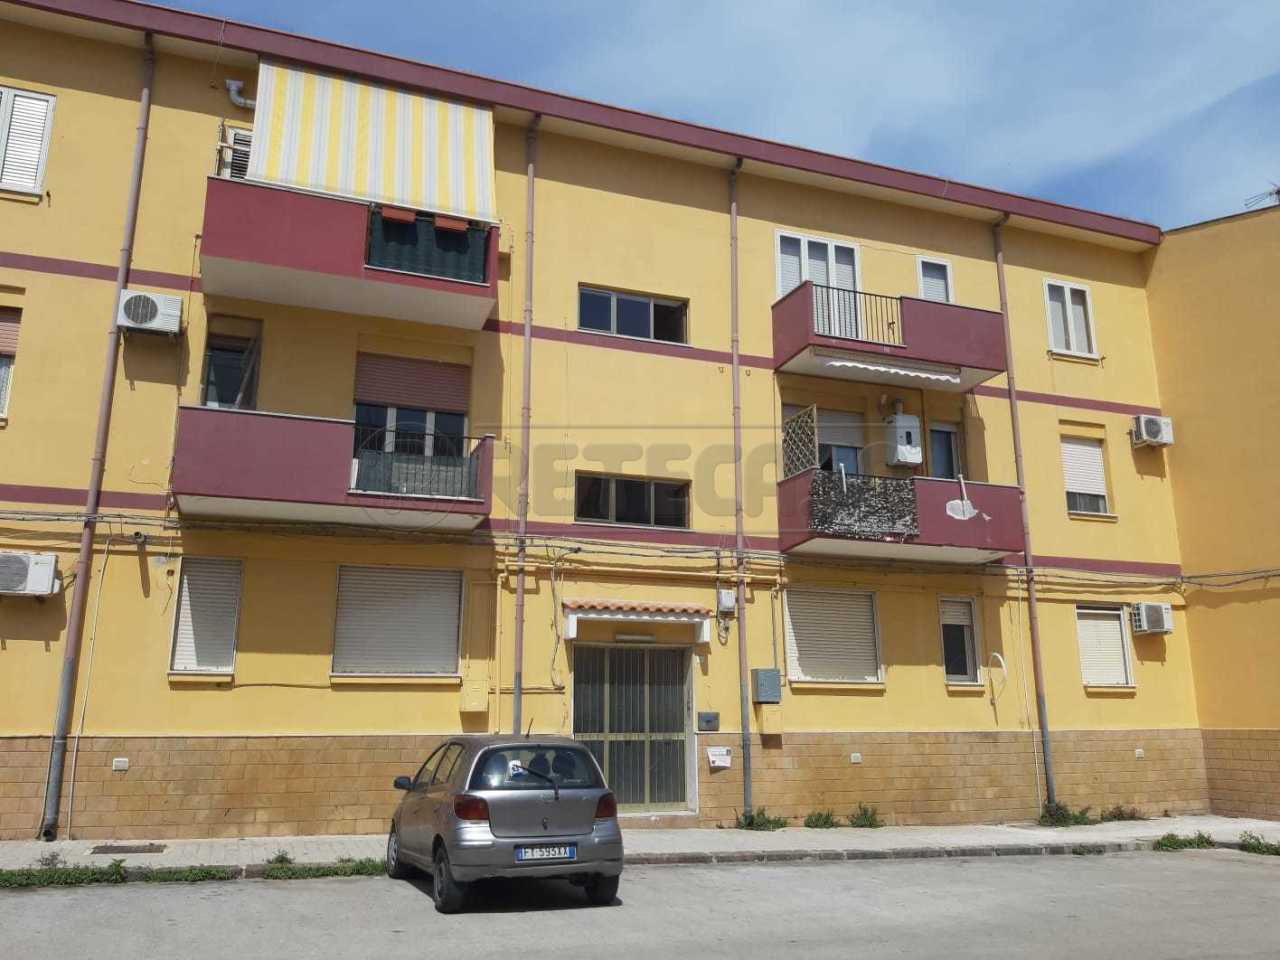 Appartamento in vendita a Siracusa, 5 locali, prezzo € 75.000 | CambioCasa.it